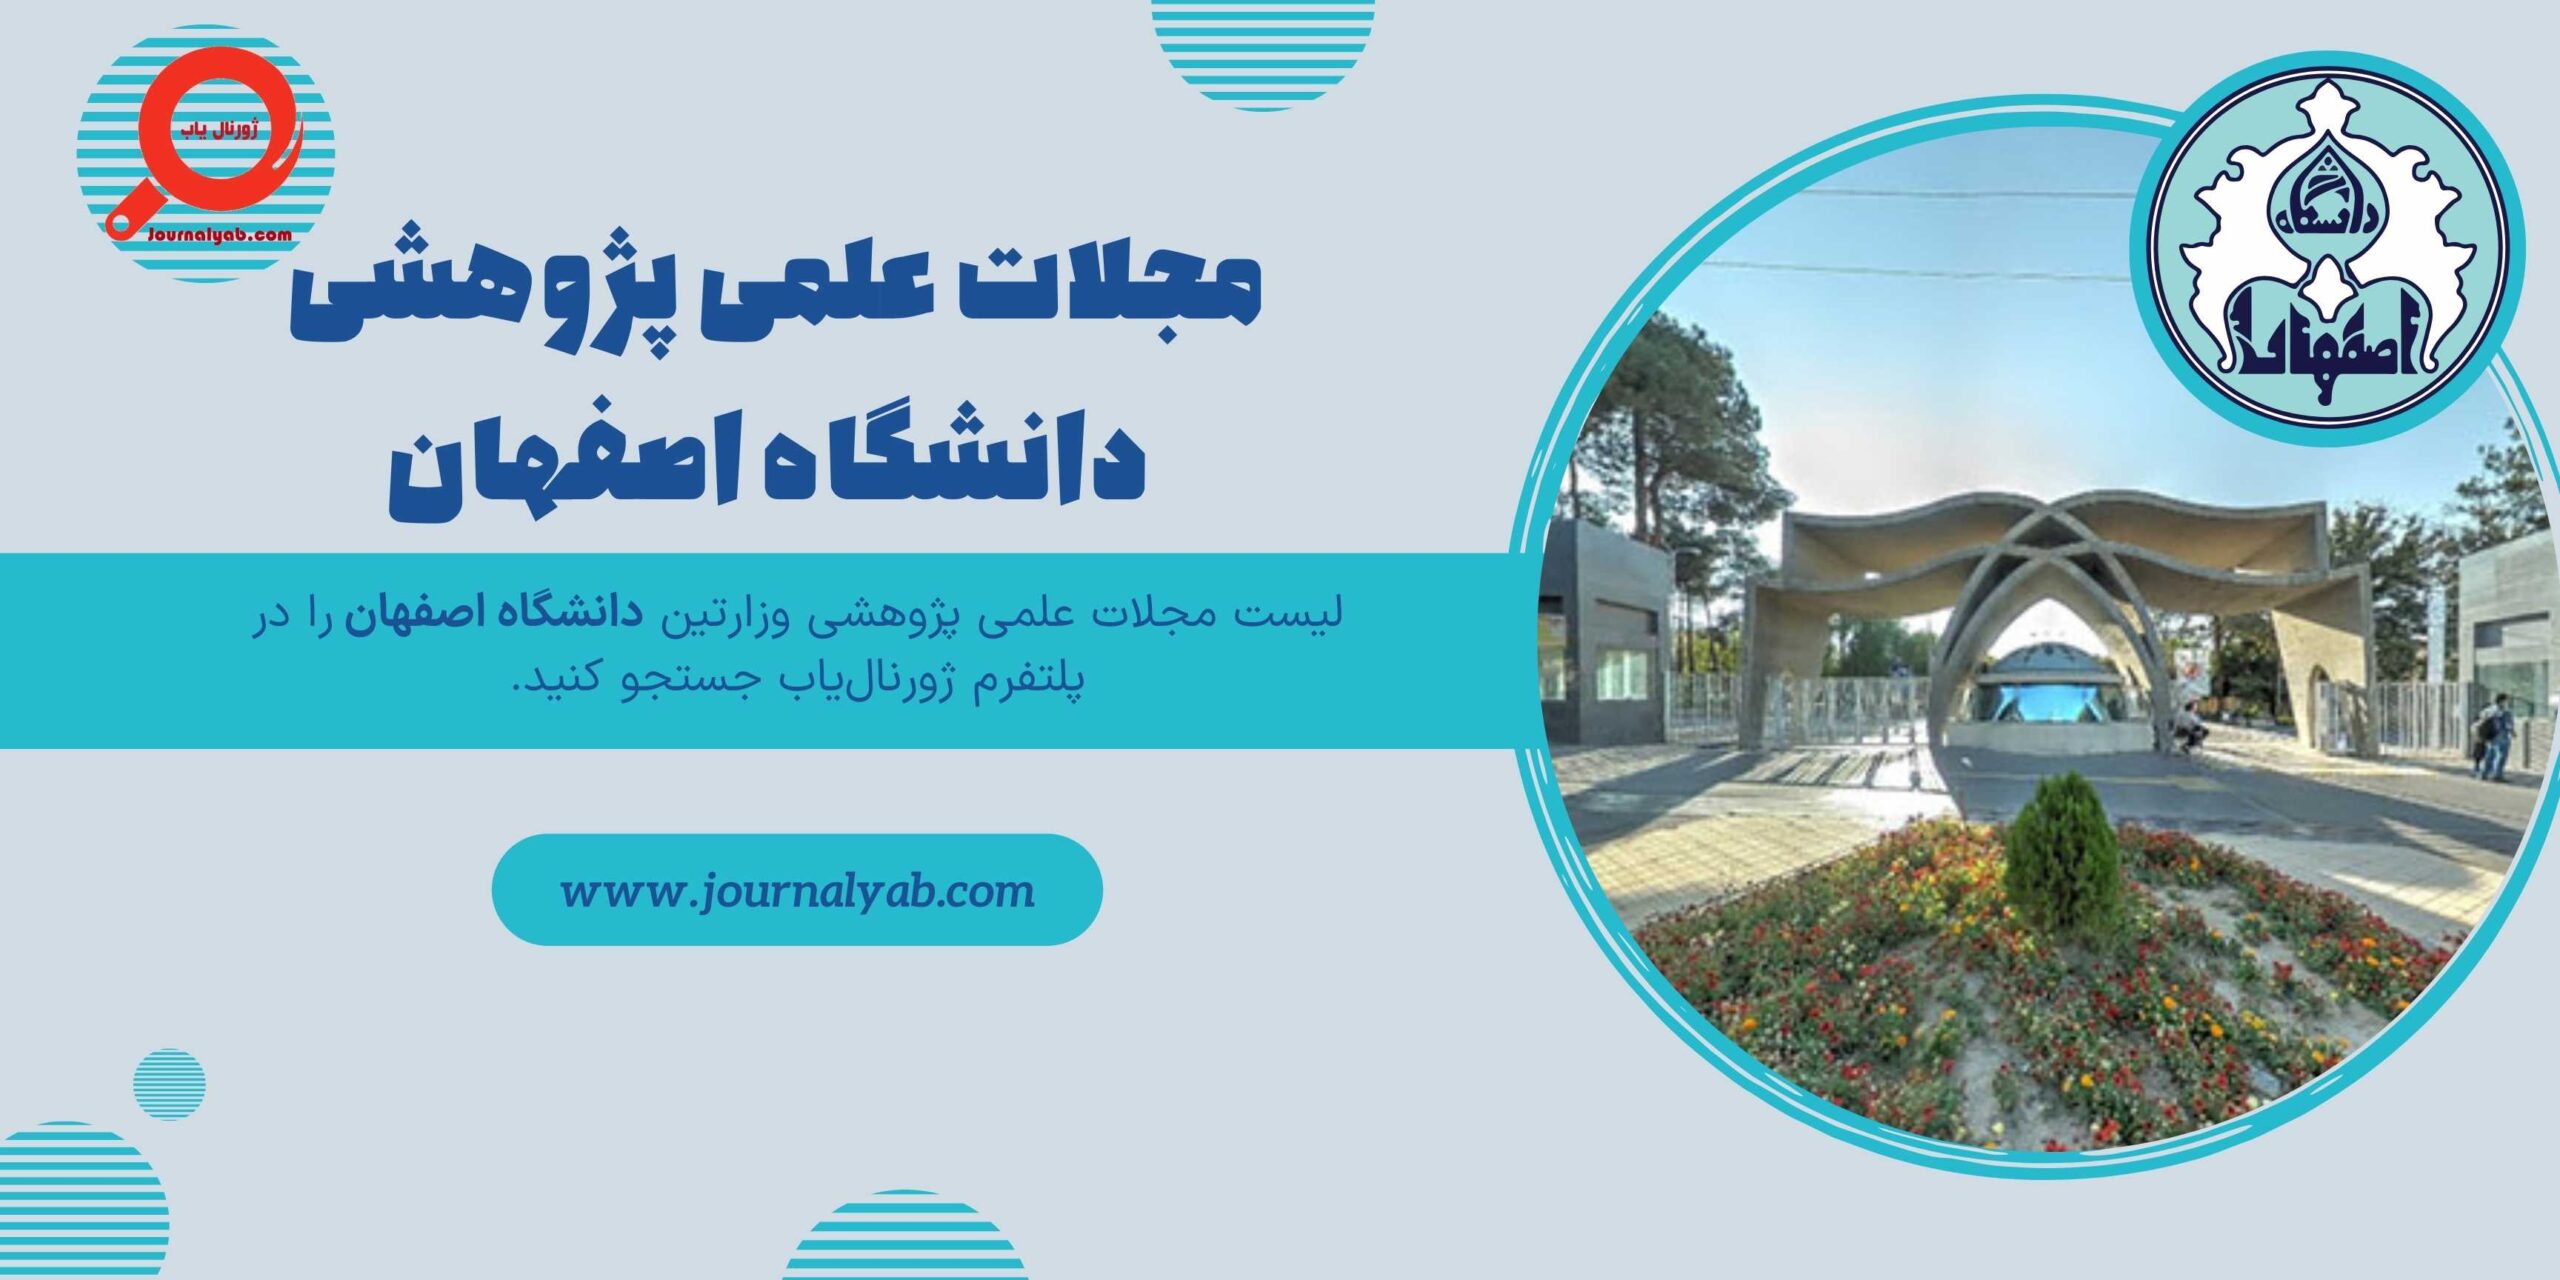 لیست مجلات علمی پژوهشی دانشگاه اصفهان